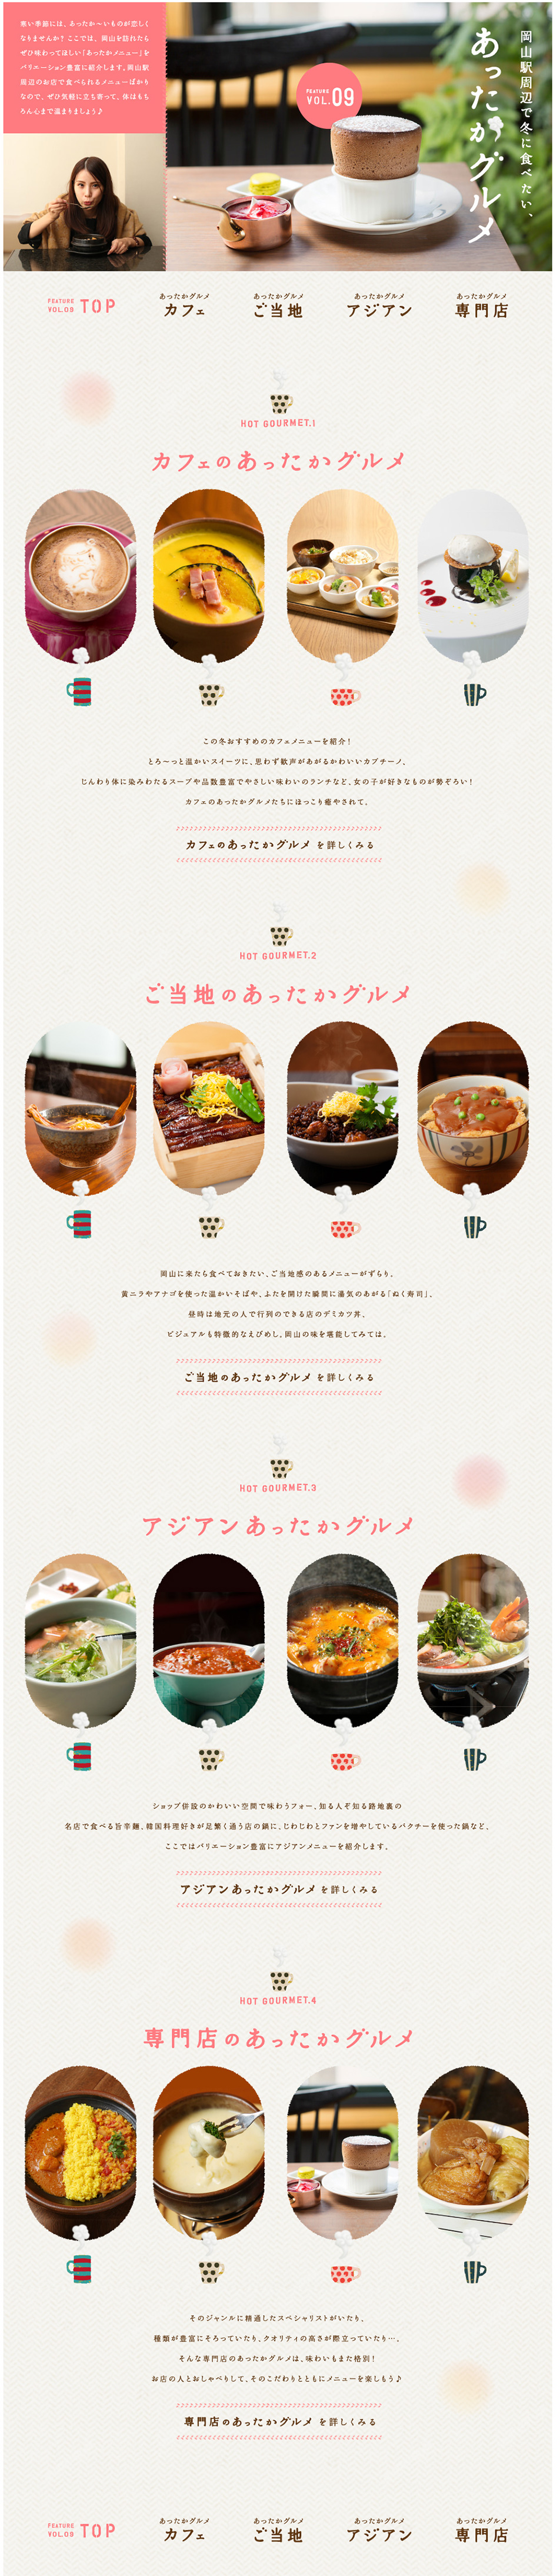 岡山駅周辺で冬に食べたい、あったかグルメ_pc_1